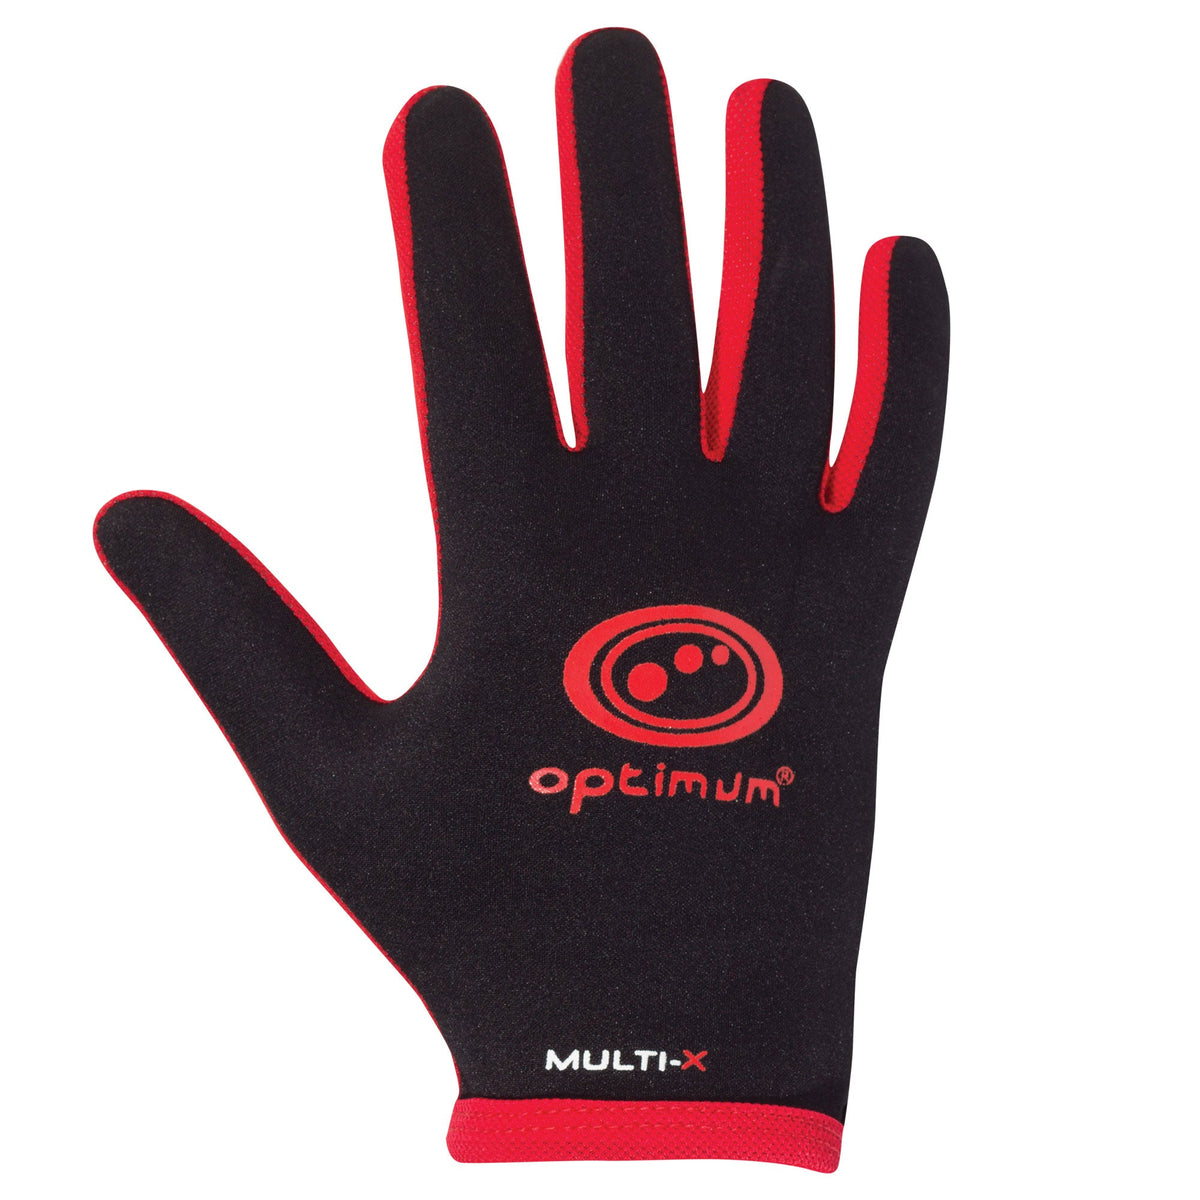 Multi-X Full Finger Gloves Red - Optimum